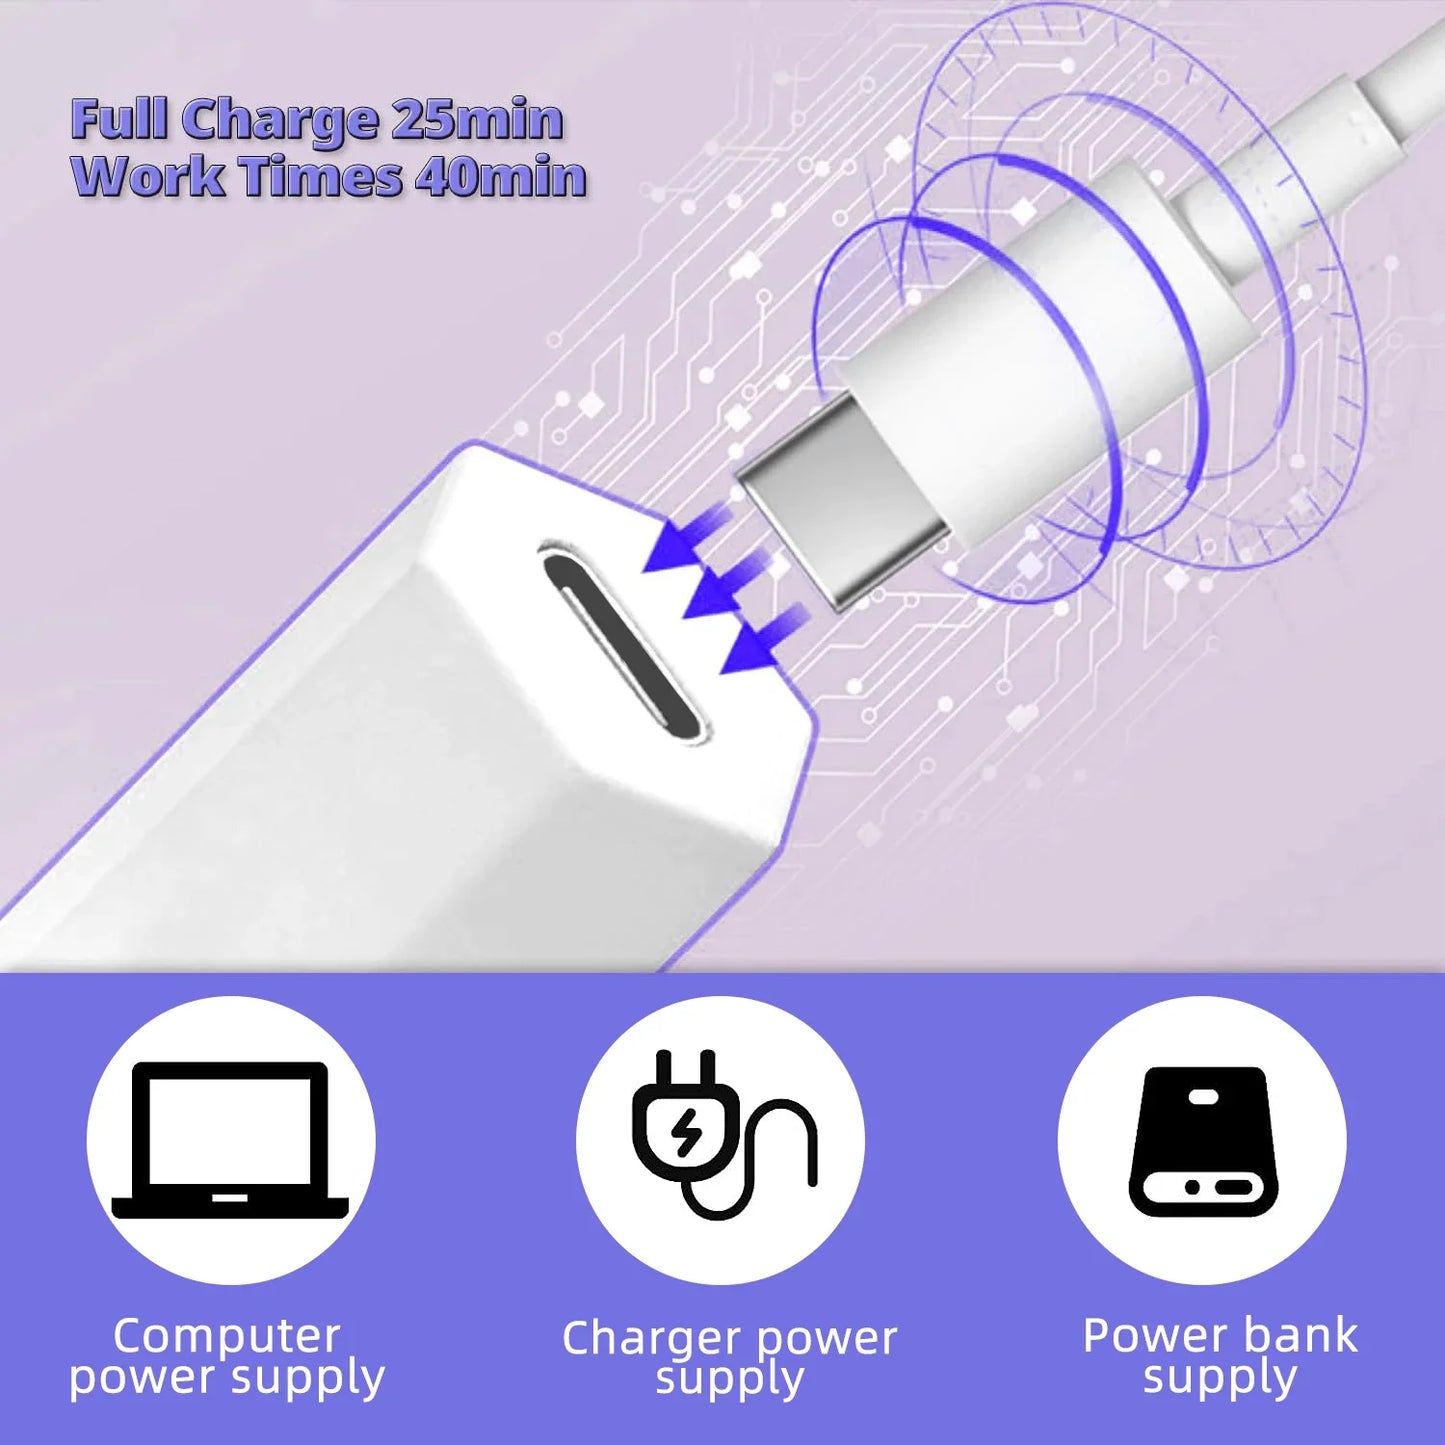 Portable Handheld Mini Nail Lamp For All Gel Polish Quick Dry USB Nail Dryer Machine UV LED Nail Lamp Mini Flashlight Pen